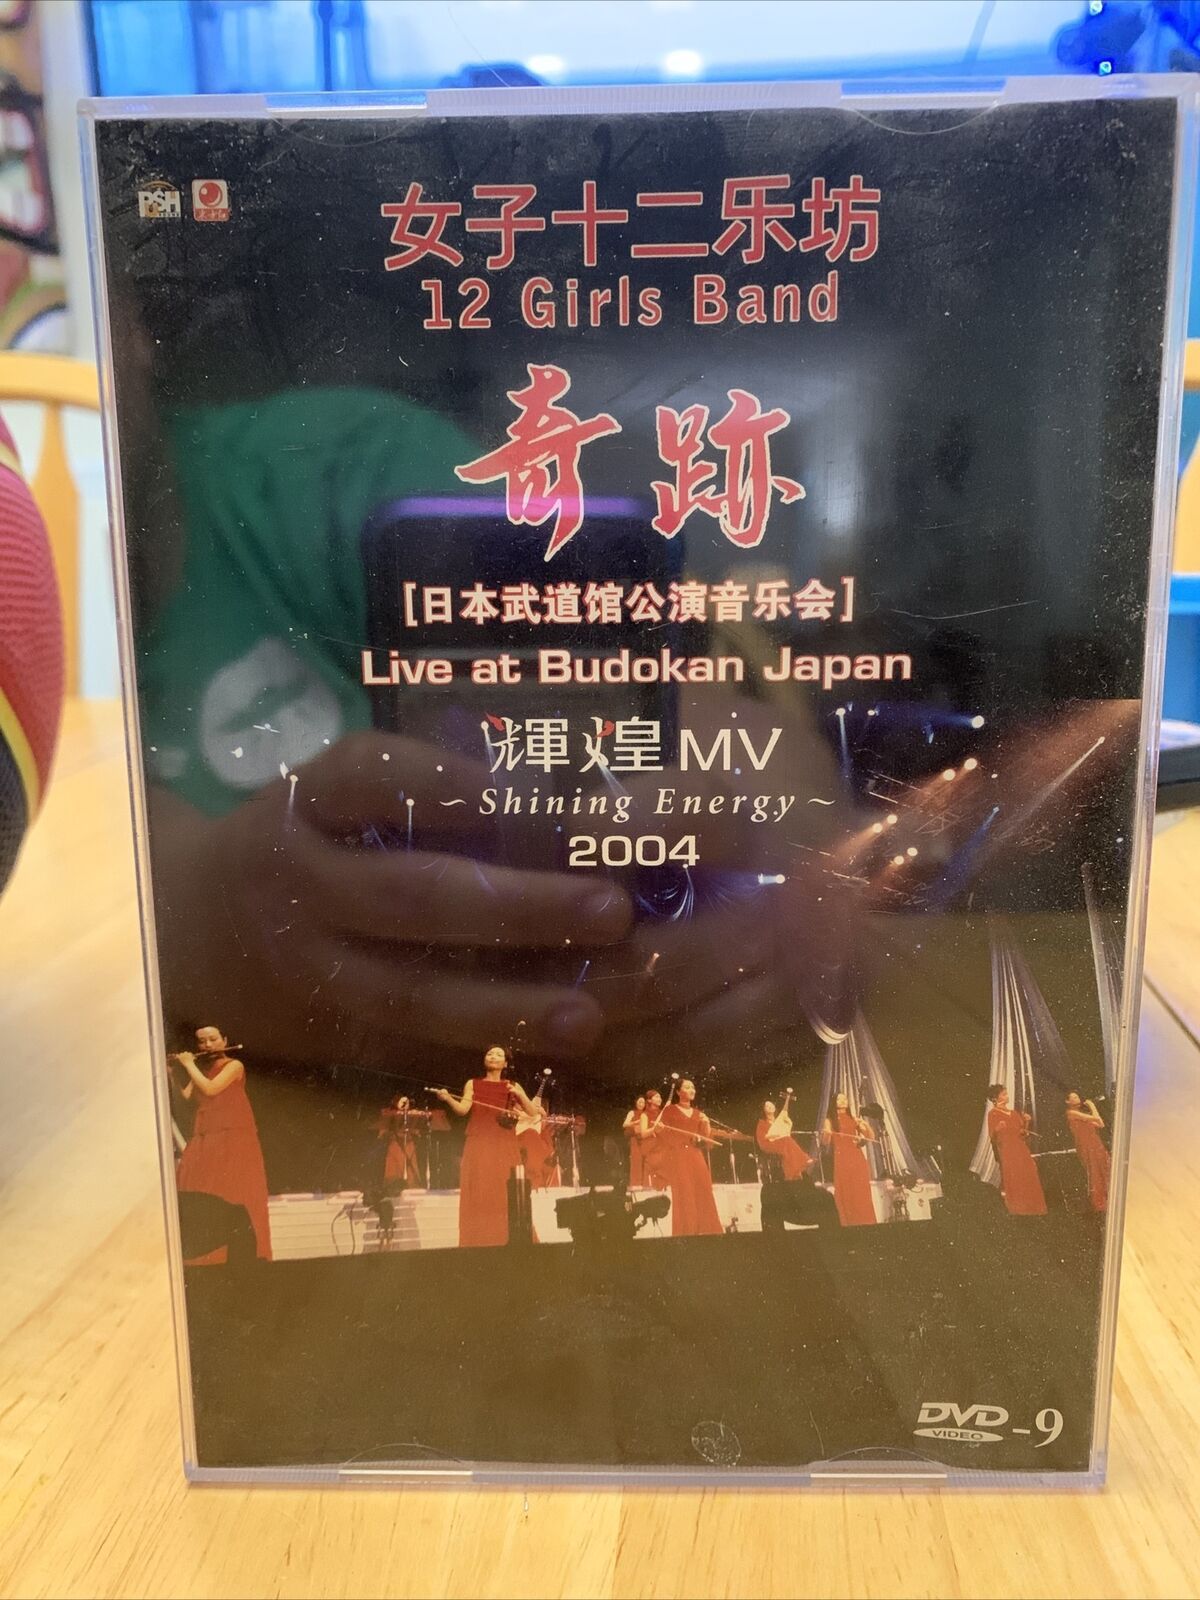 Primary image for 12 Girl Band - Live at Budokan Japan, Shining Energy 2004 - CD+DVD